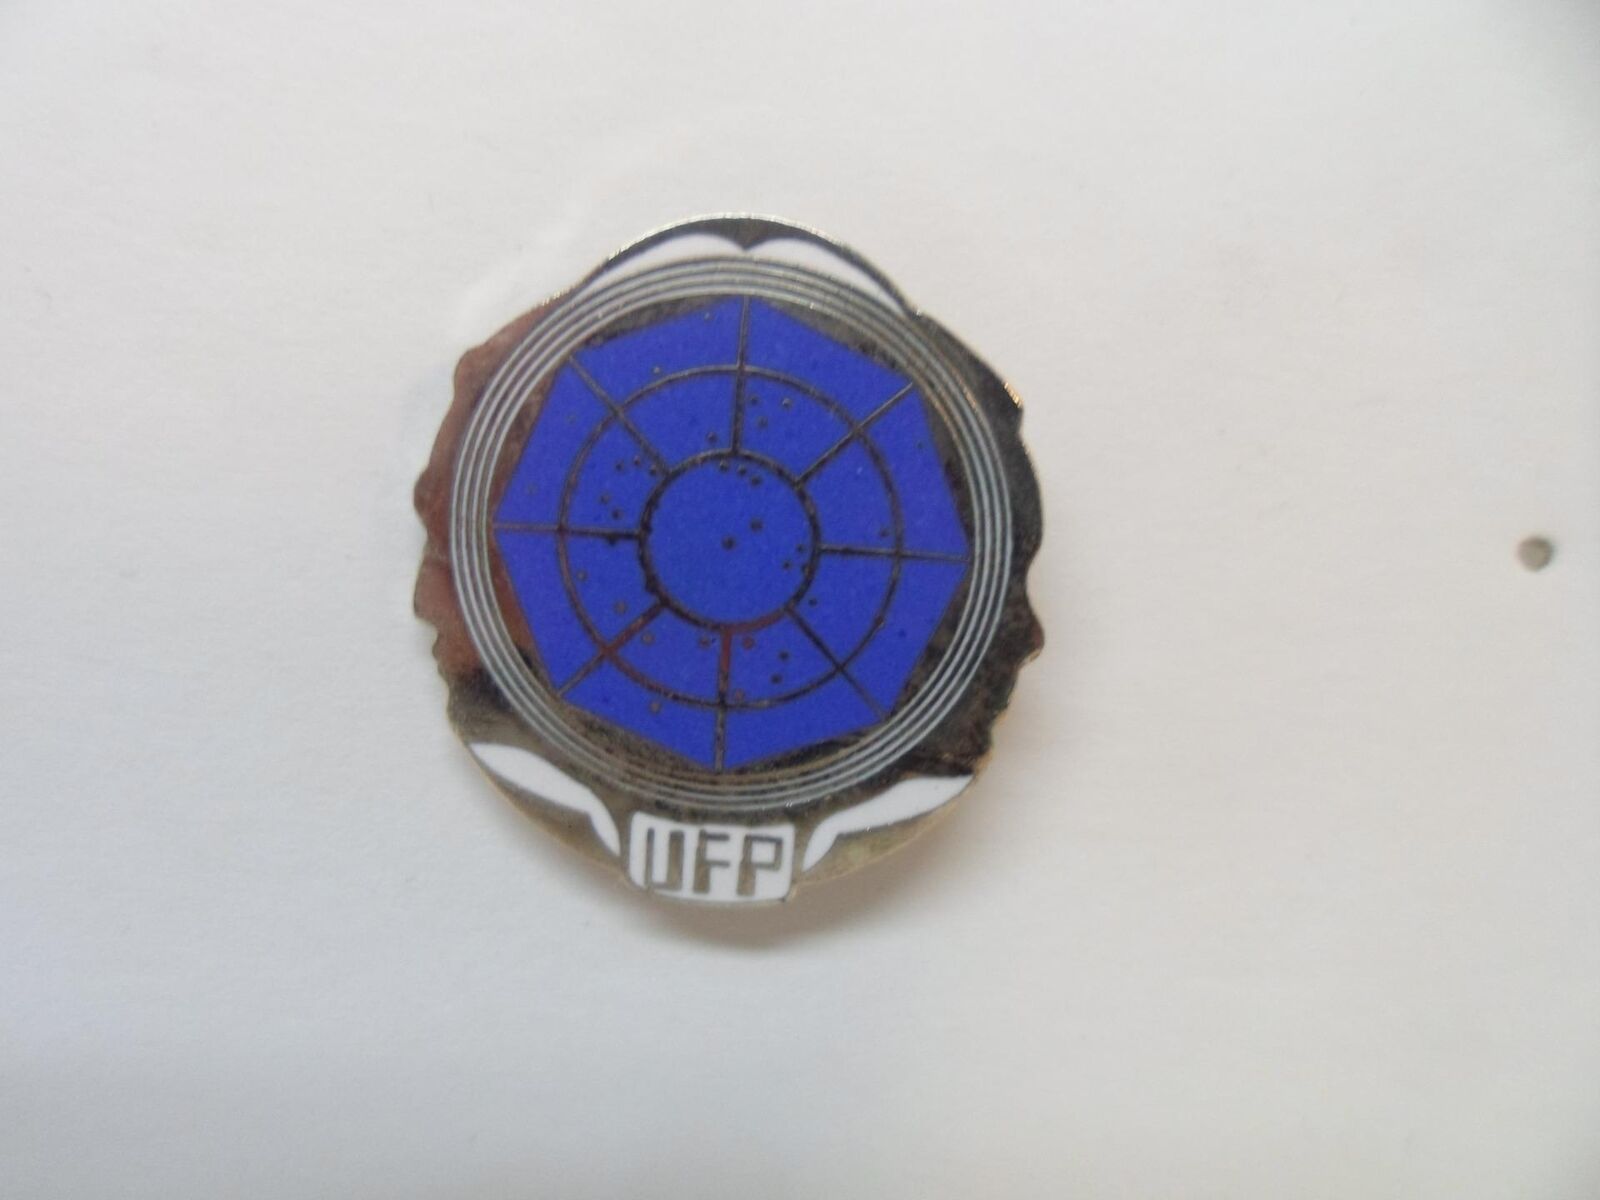 Vintage 1988 Star Trek United Federation Of Planets Badge Pin - UNUSED